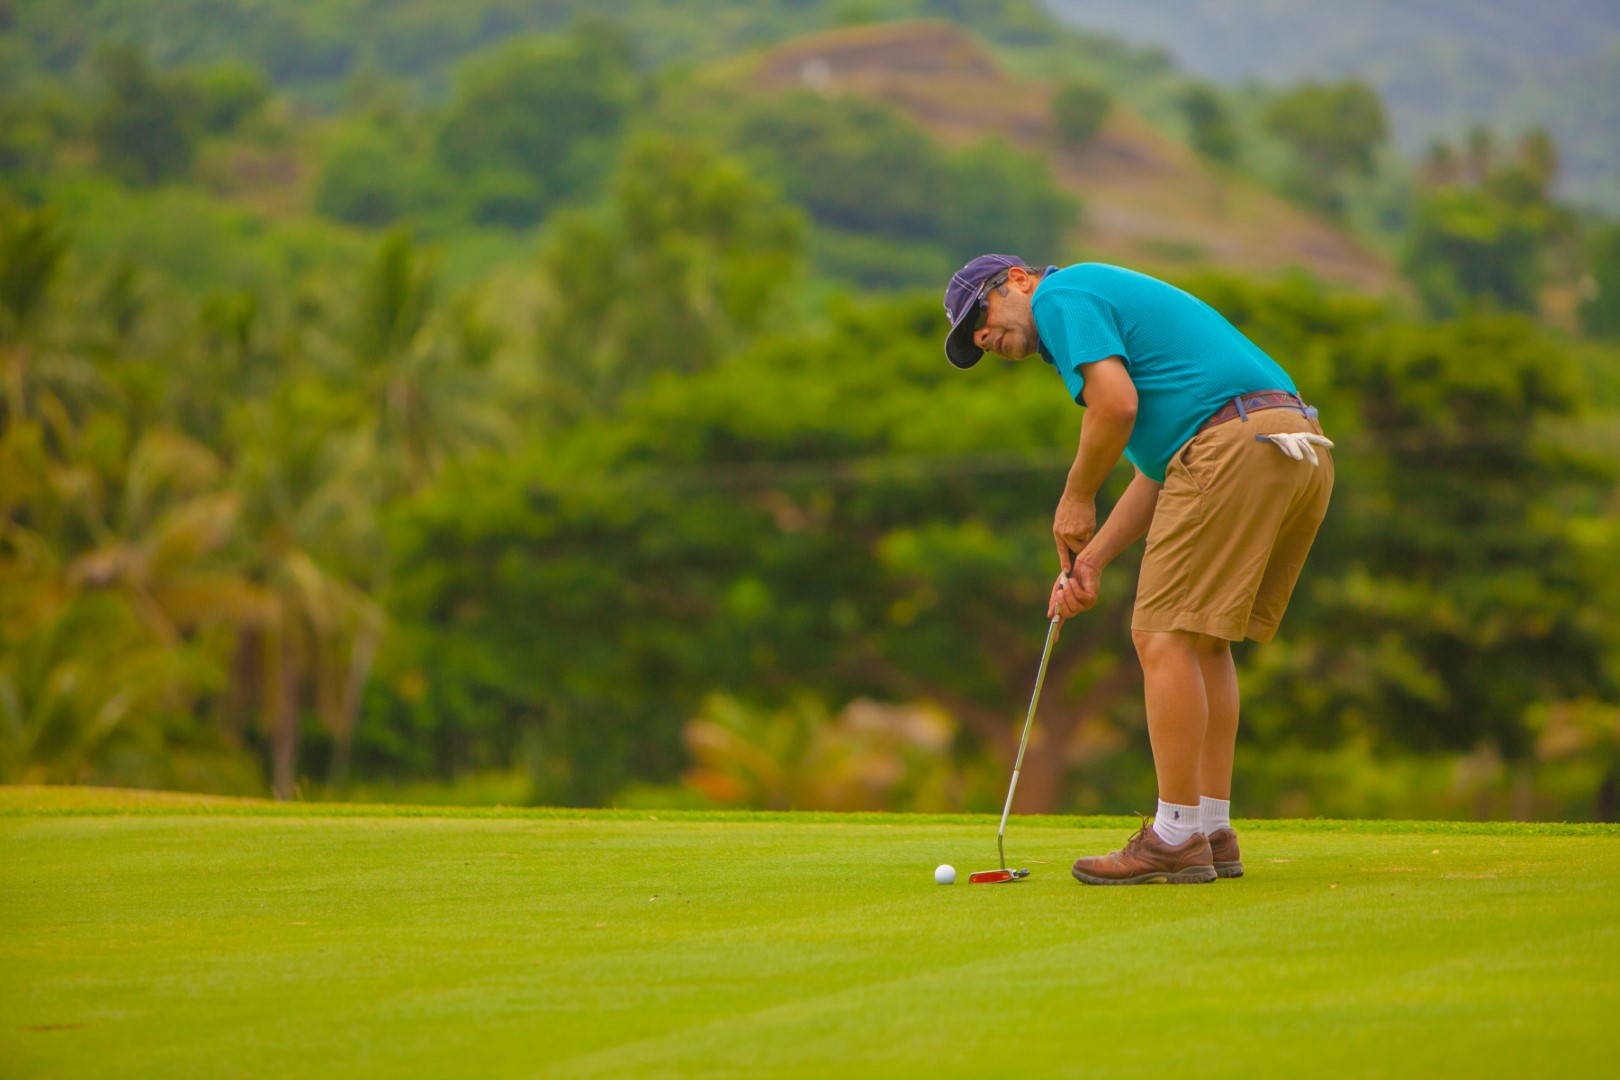 Sri lanka field of Golf